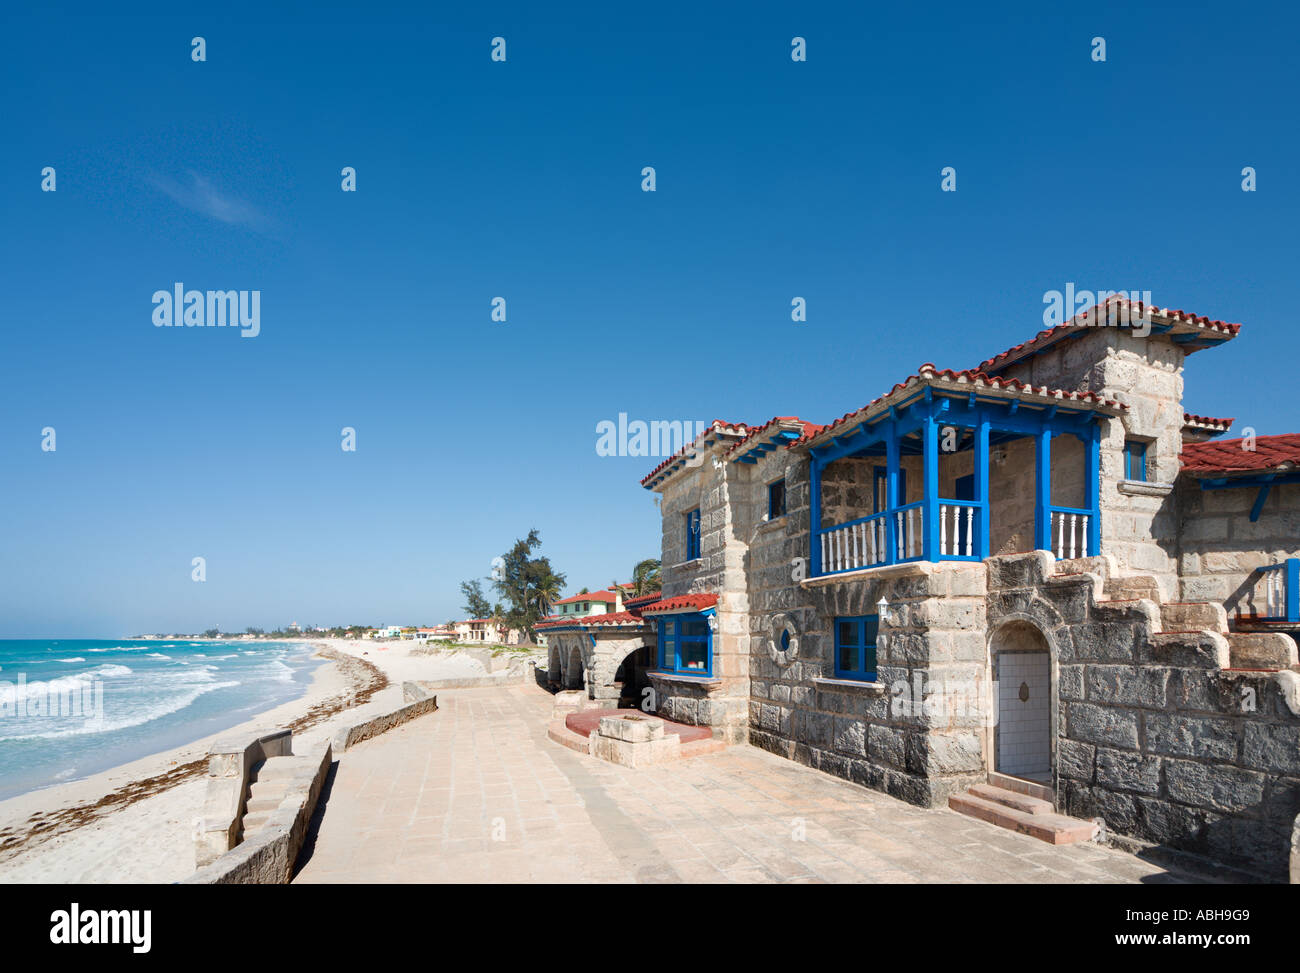 La Casa de Al Restaurant (l'ancienne résidence de vacances d'Al Capone), Varadero, Cuba Banque D'Images